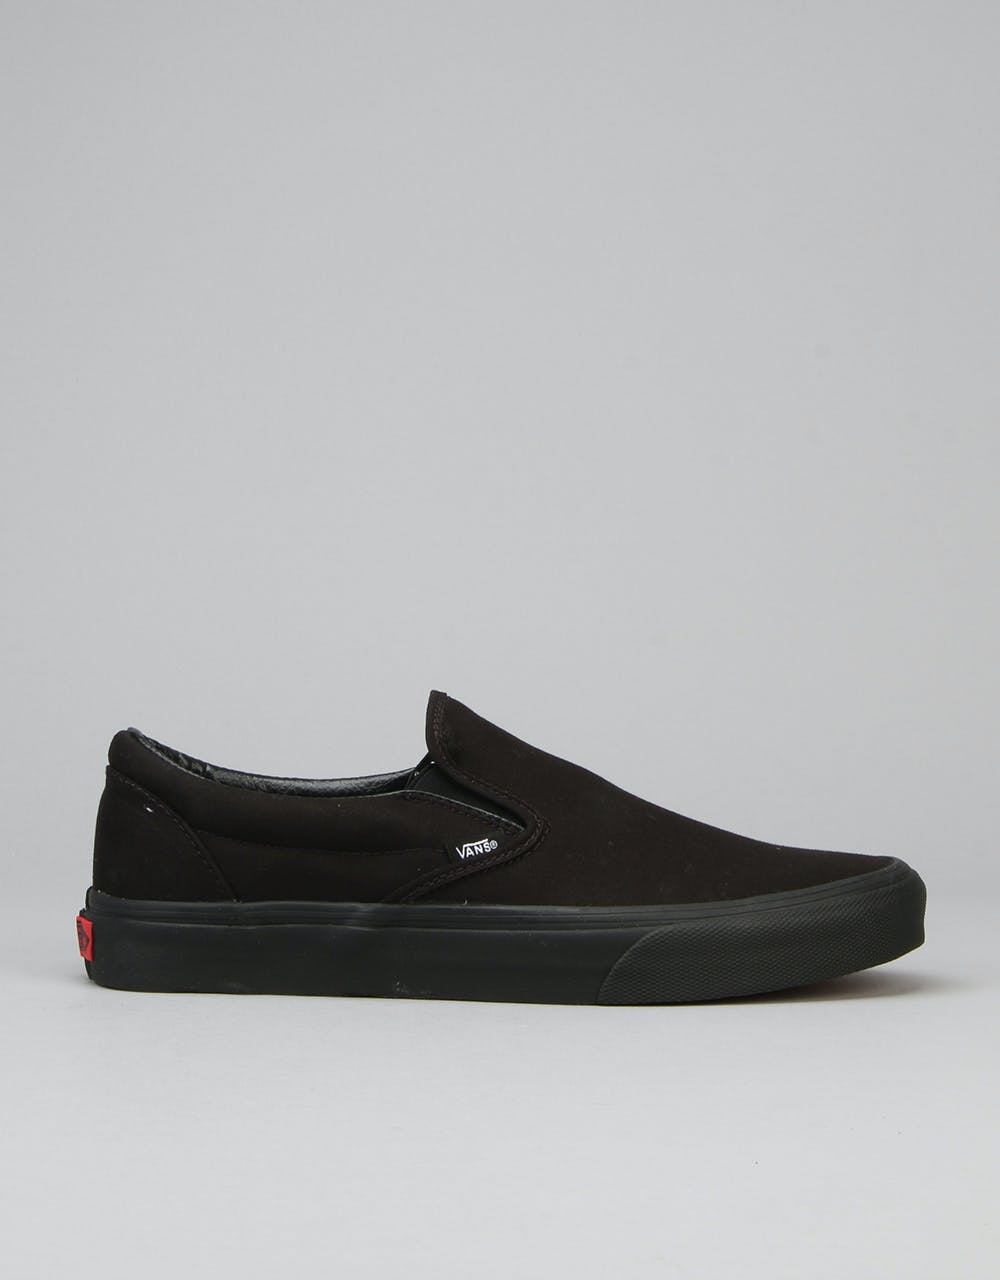 Vans Classic Slip On Skate Shoes - Black/Black